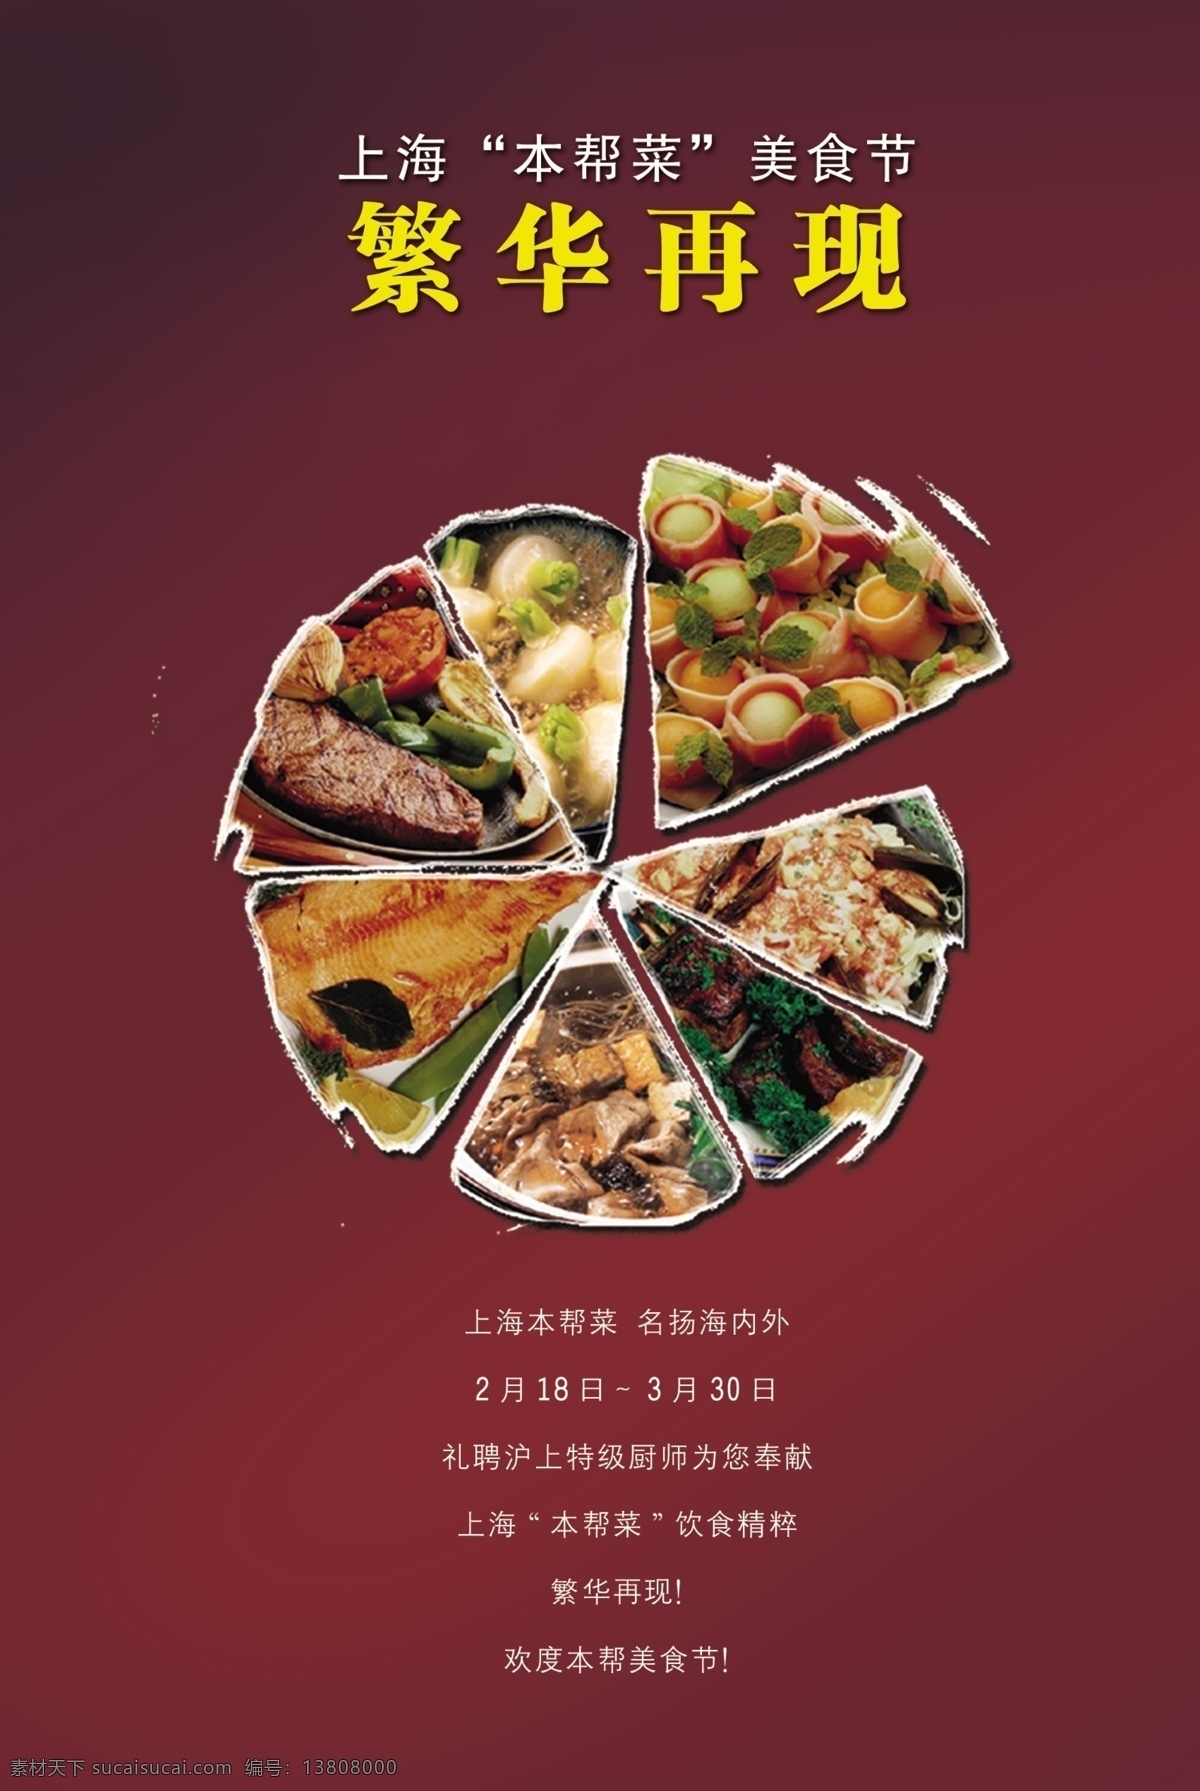 菜品 菜单 海鲜 本帮菜 上海菜 海报单张折页